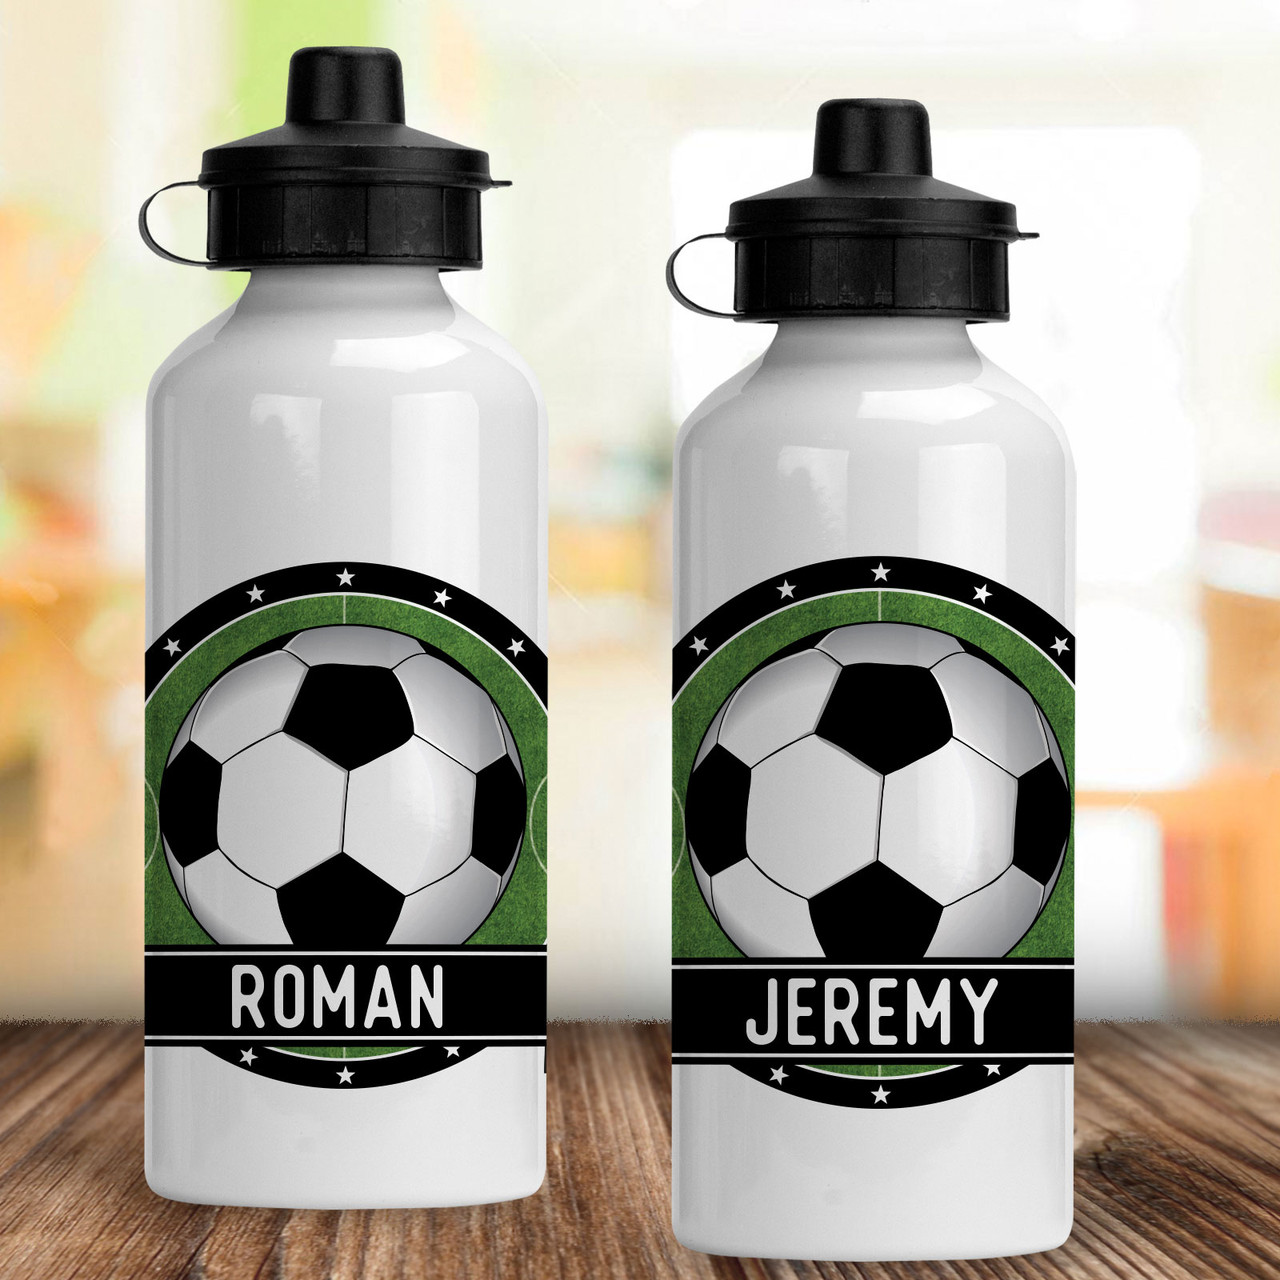 Personalized Midfielder Soccer Water Bottle